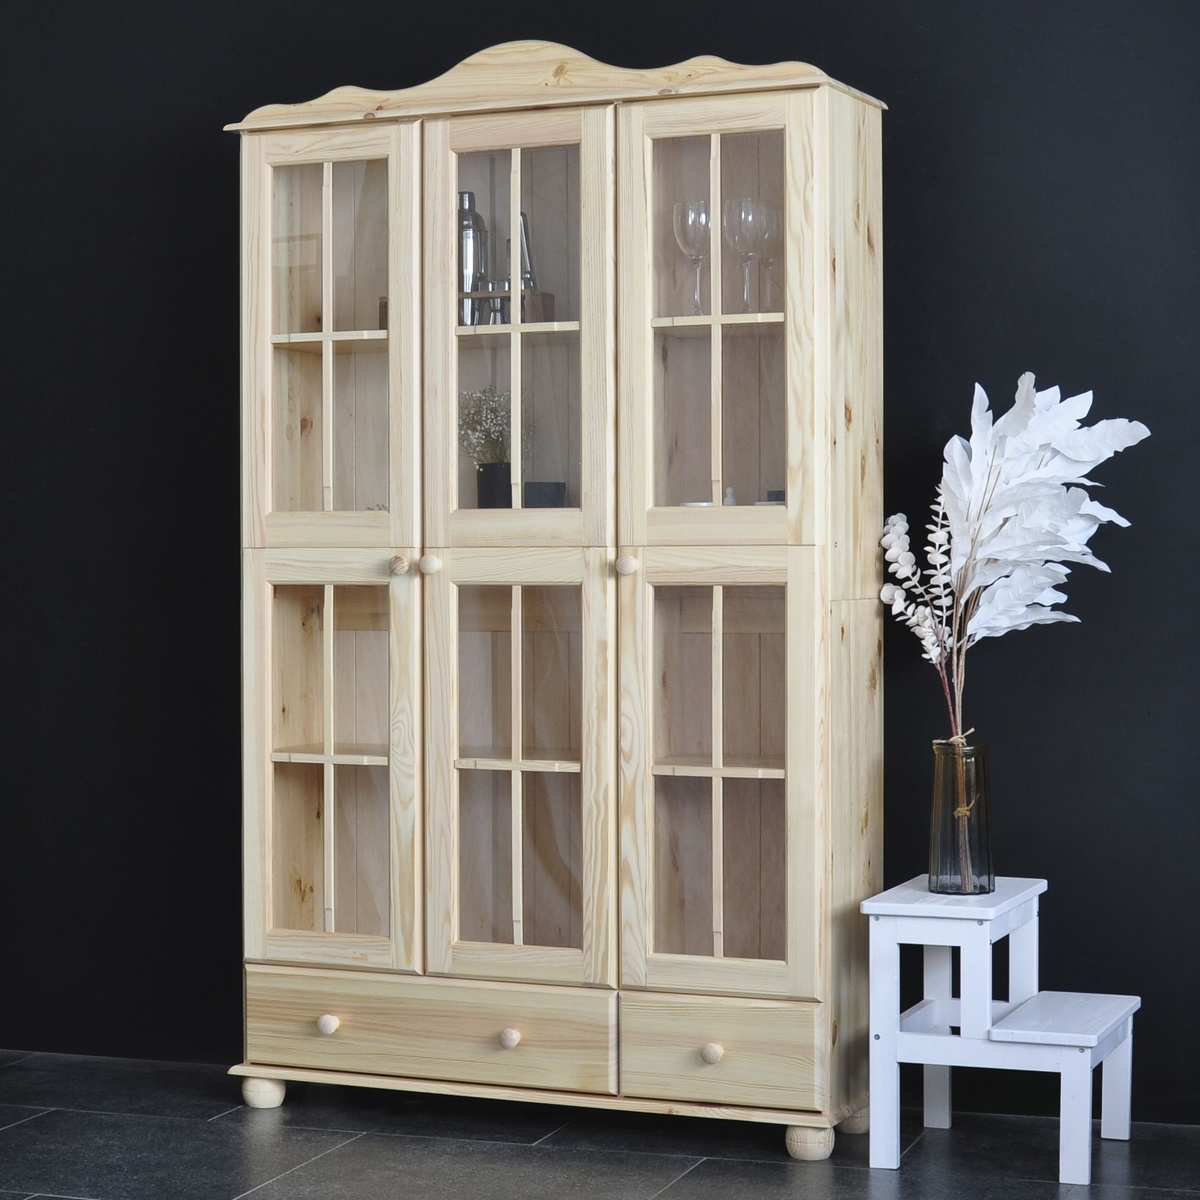 Шкаф "Бритта" изготовлен из массива сосны, от белорусского производителя мебели "Диприз", с использованием экологически чистых отделочных материалов.